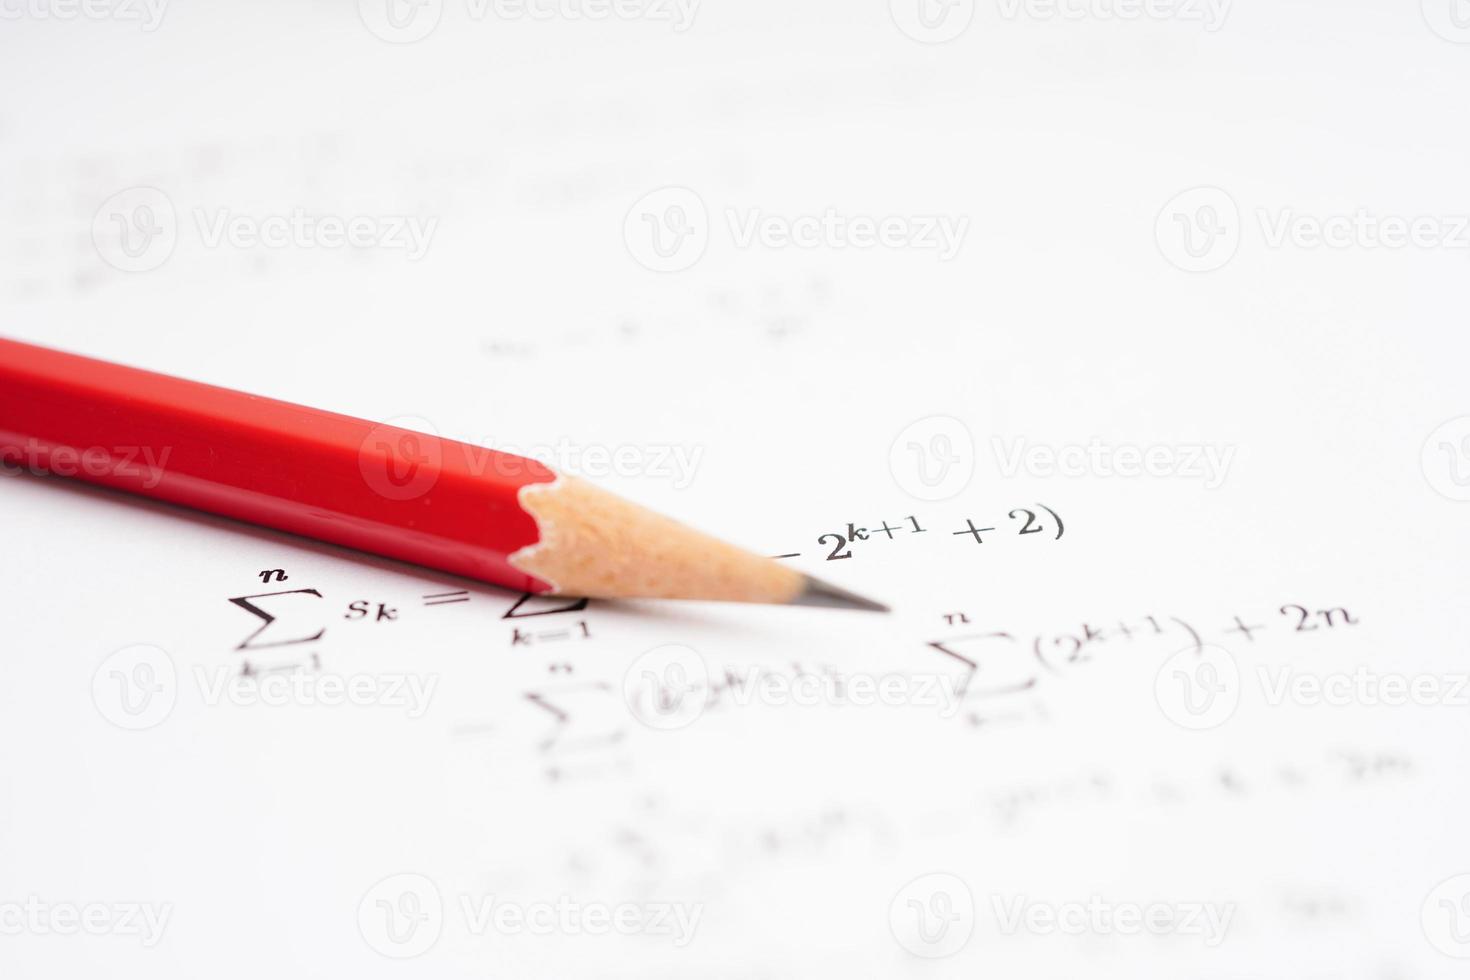 potlood op wiskundige formule oefening testpapier in het onderwijs school. foto